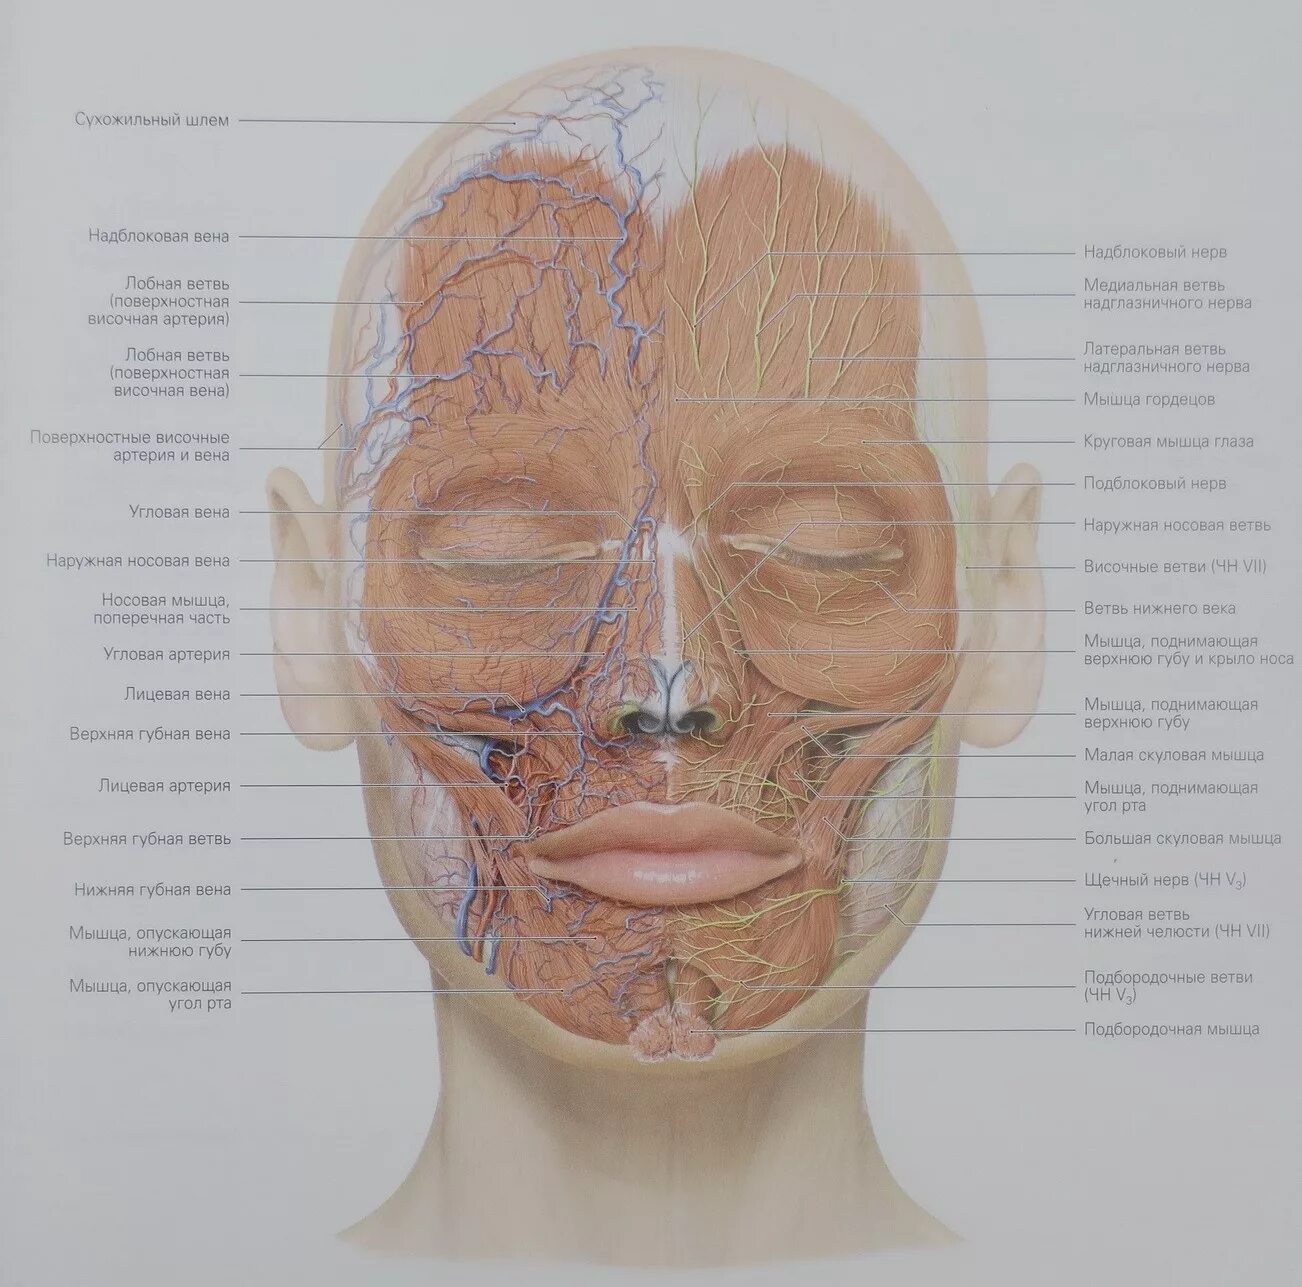 Кровеносные сосуды лица топографическая анатомия. Лицевая Вена топографическая анатомия. Иннервация лица топографическая анатомия. Топография анатомия сосудов и нервов лица.